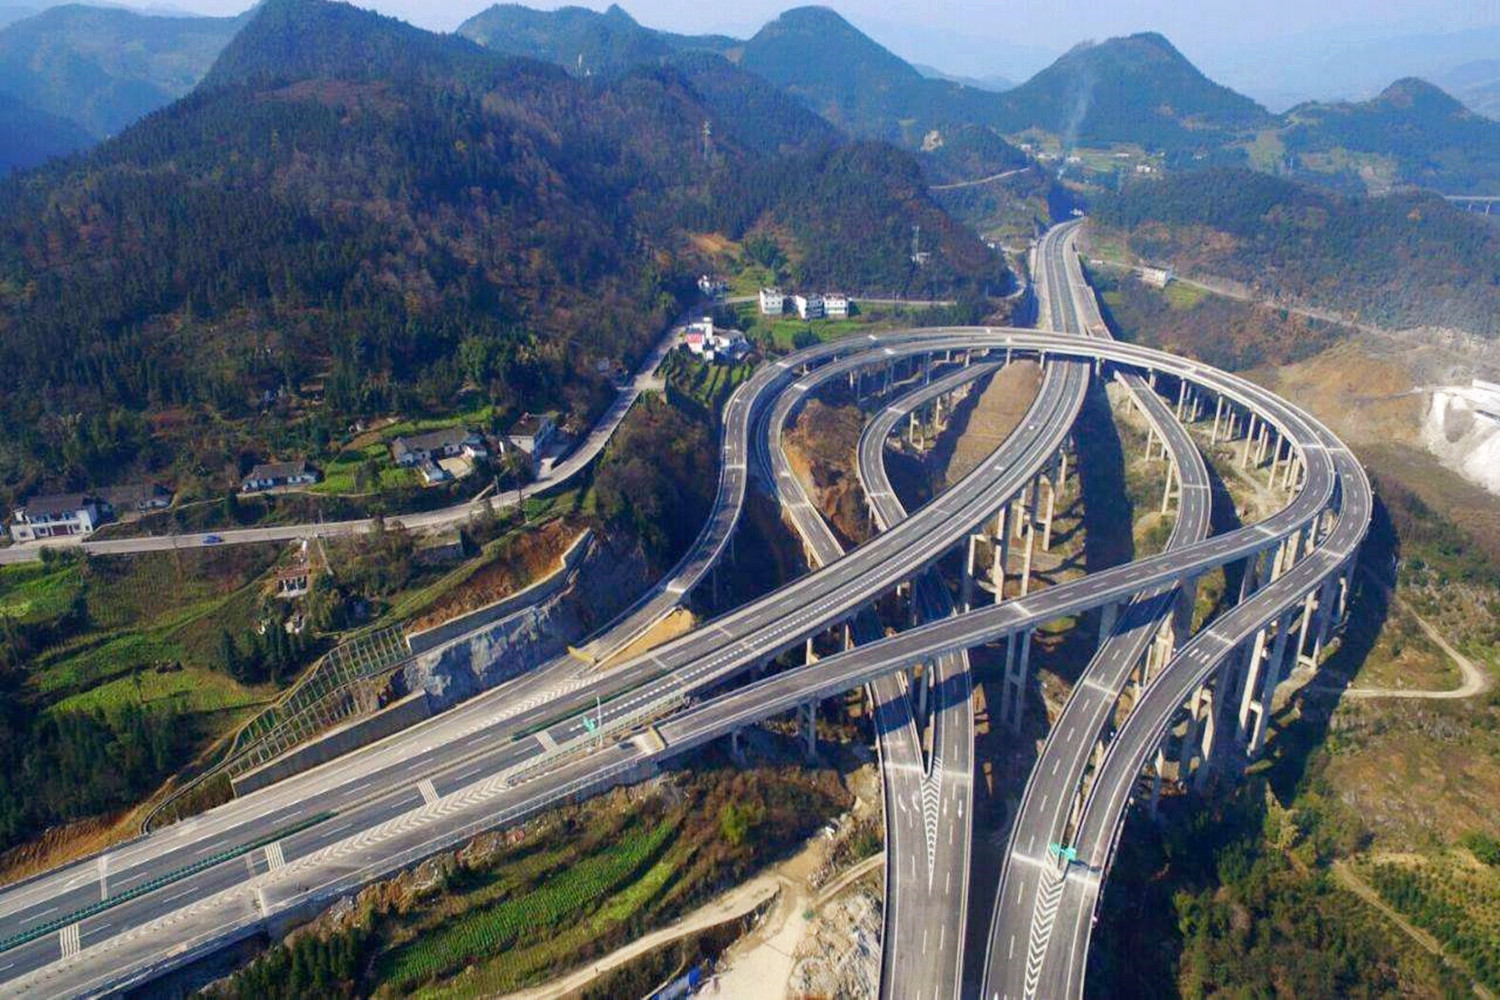 广州高速公路 广州 中国 - Pixabay上的免费照片 - Pixabay